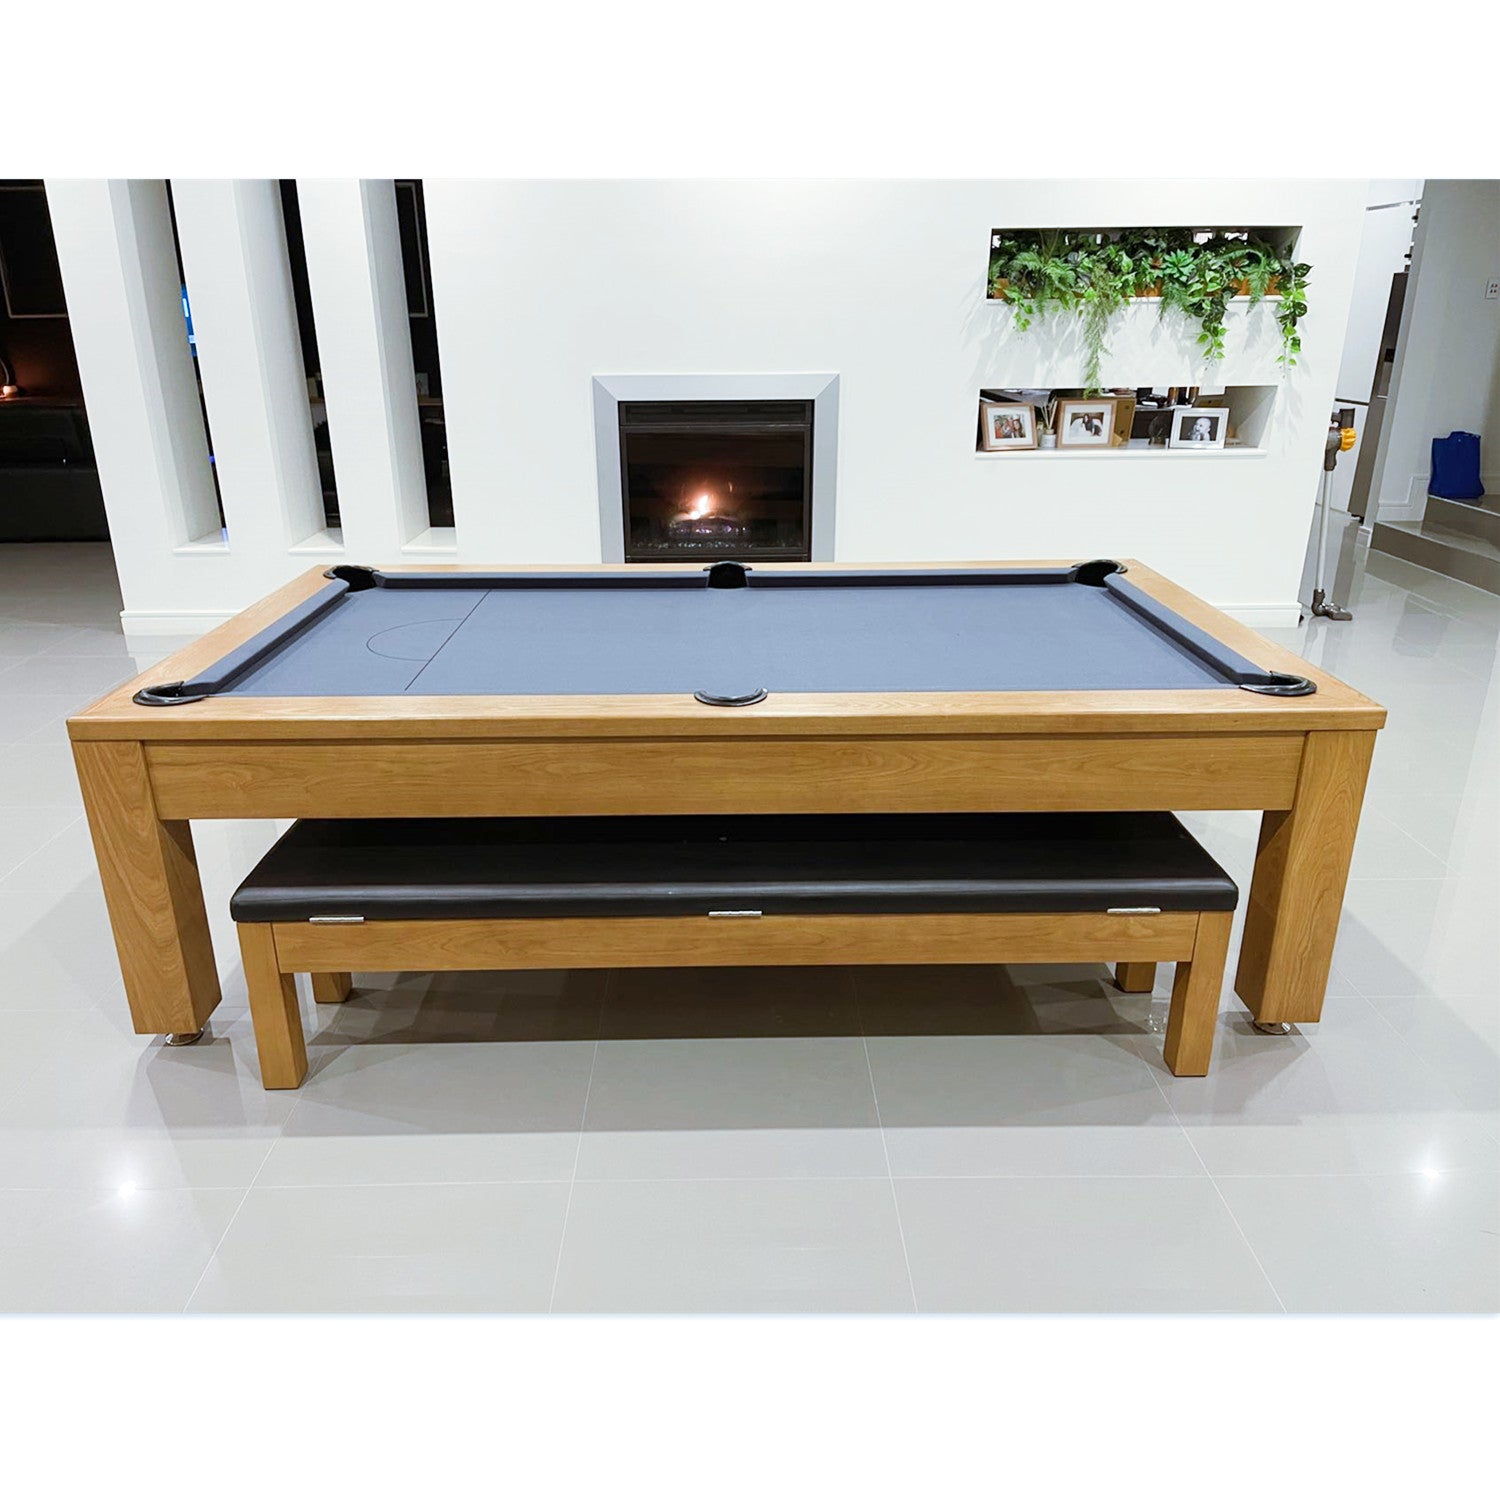 Holiday Luxury Slate Pool Table 8FT-Custom Made